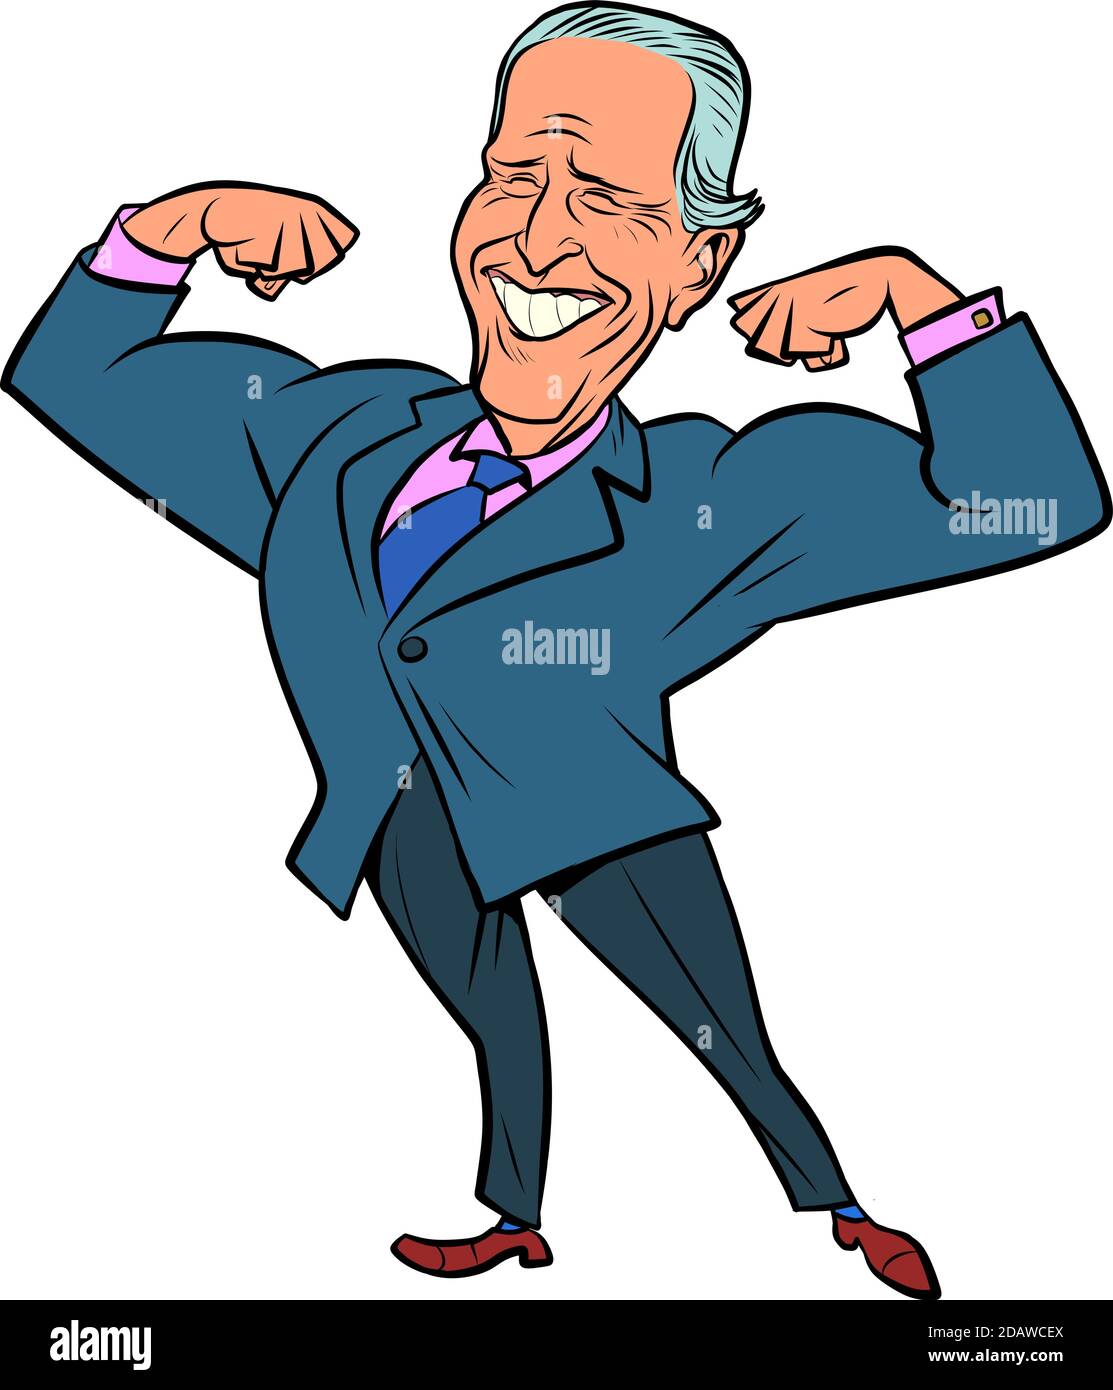 Joe Biden election winner President of the United States Stock Vector